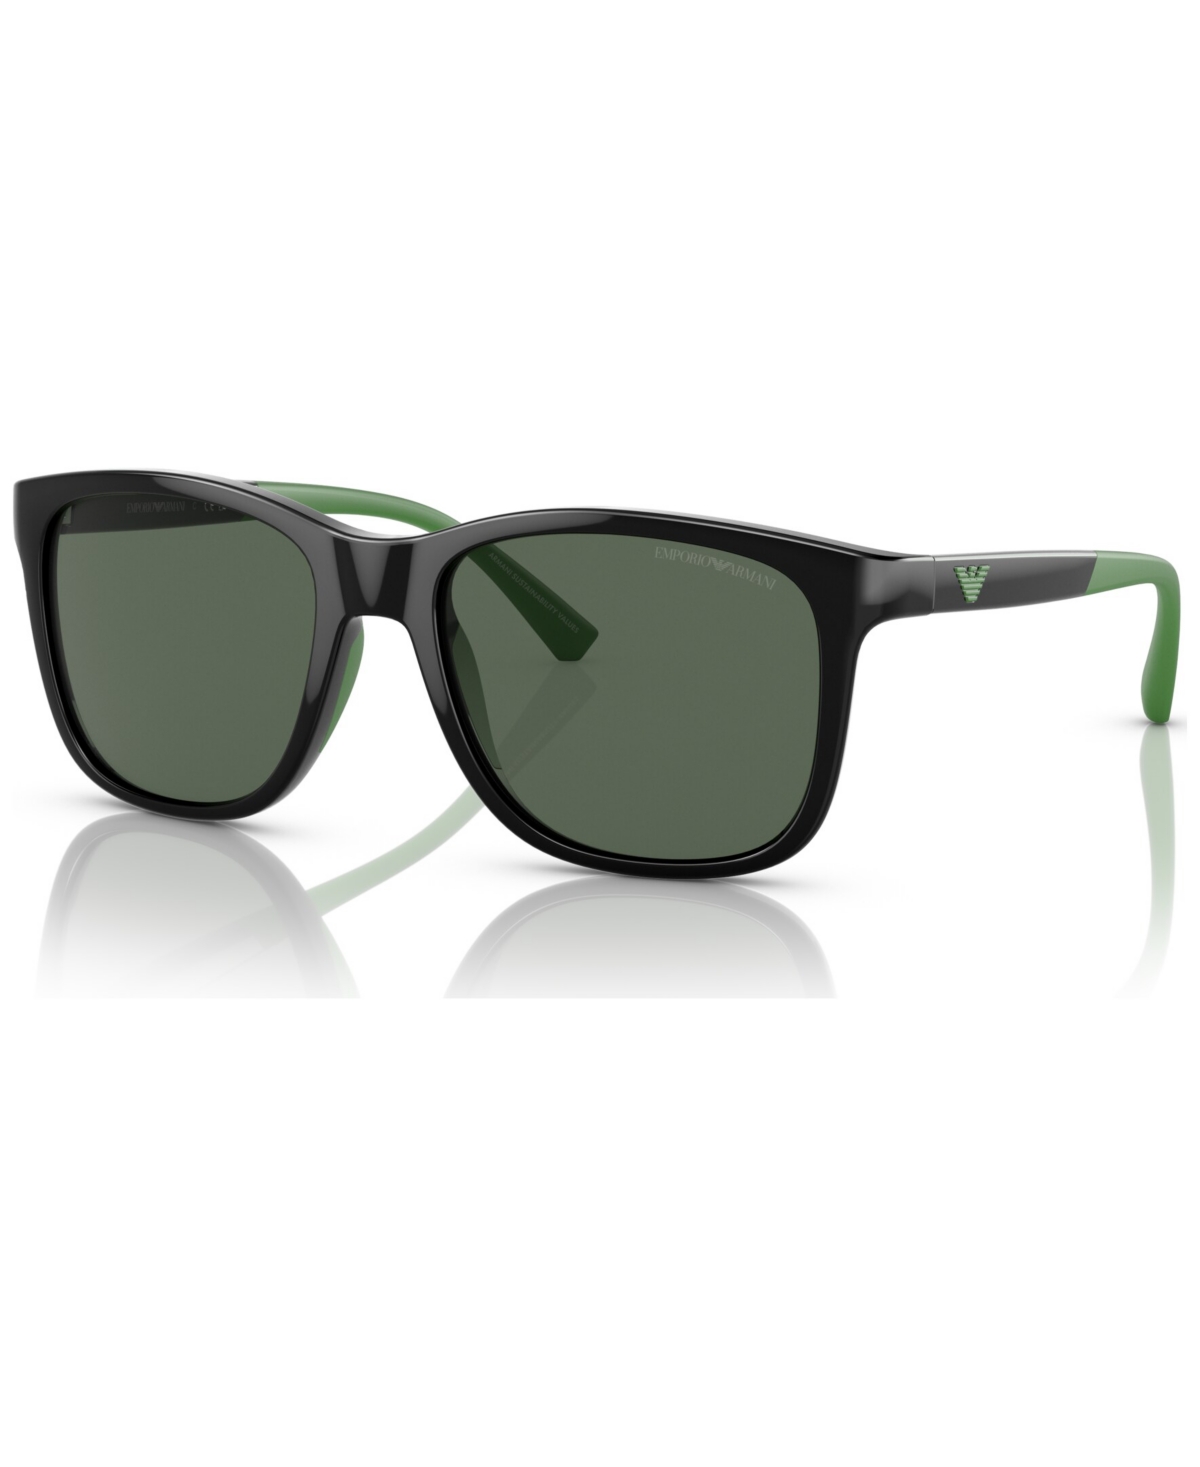 Emporio Armani Kids Sunglasses, Ek4184 In Shiny Black